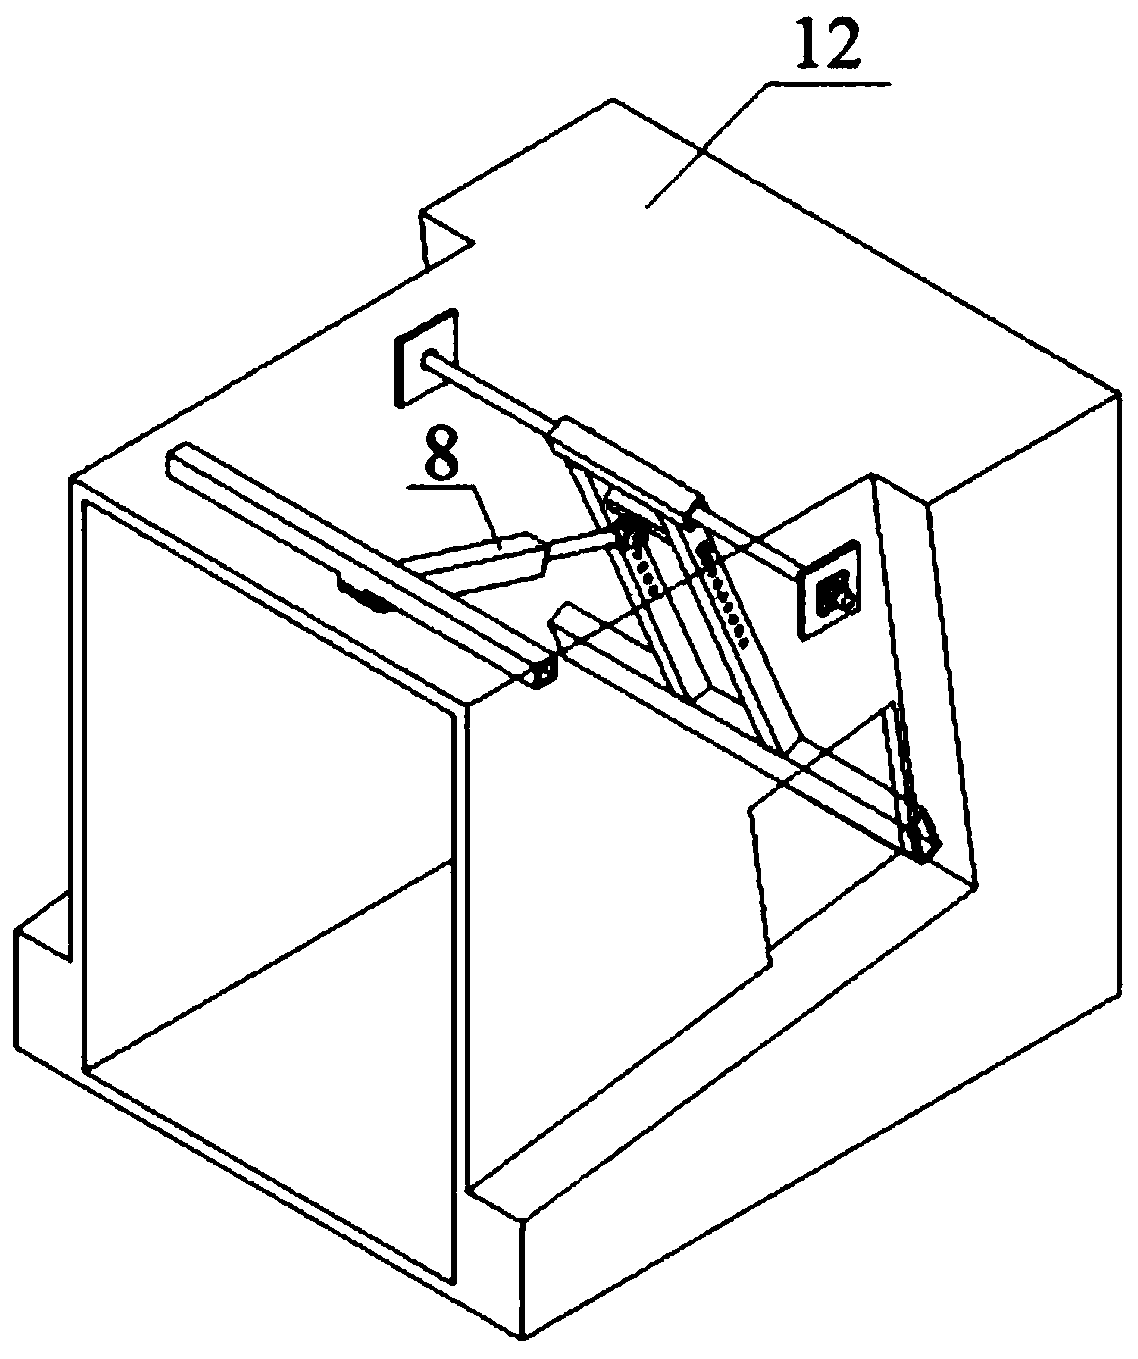 Pushing device of sheet tobacco bale loosening machine